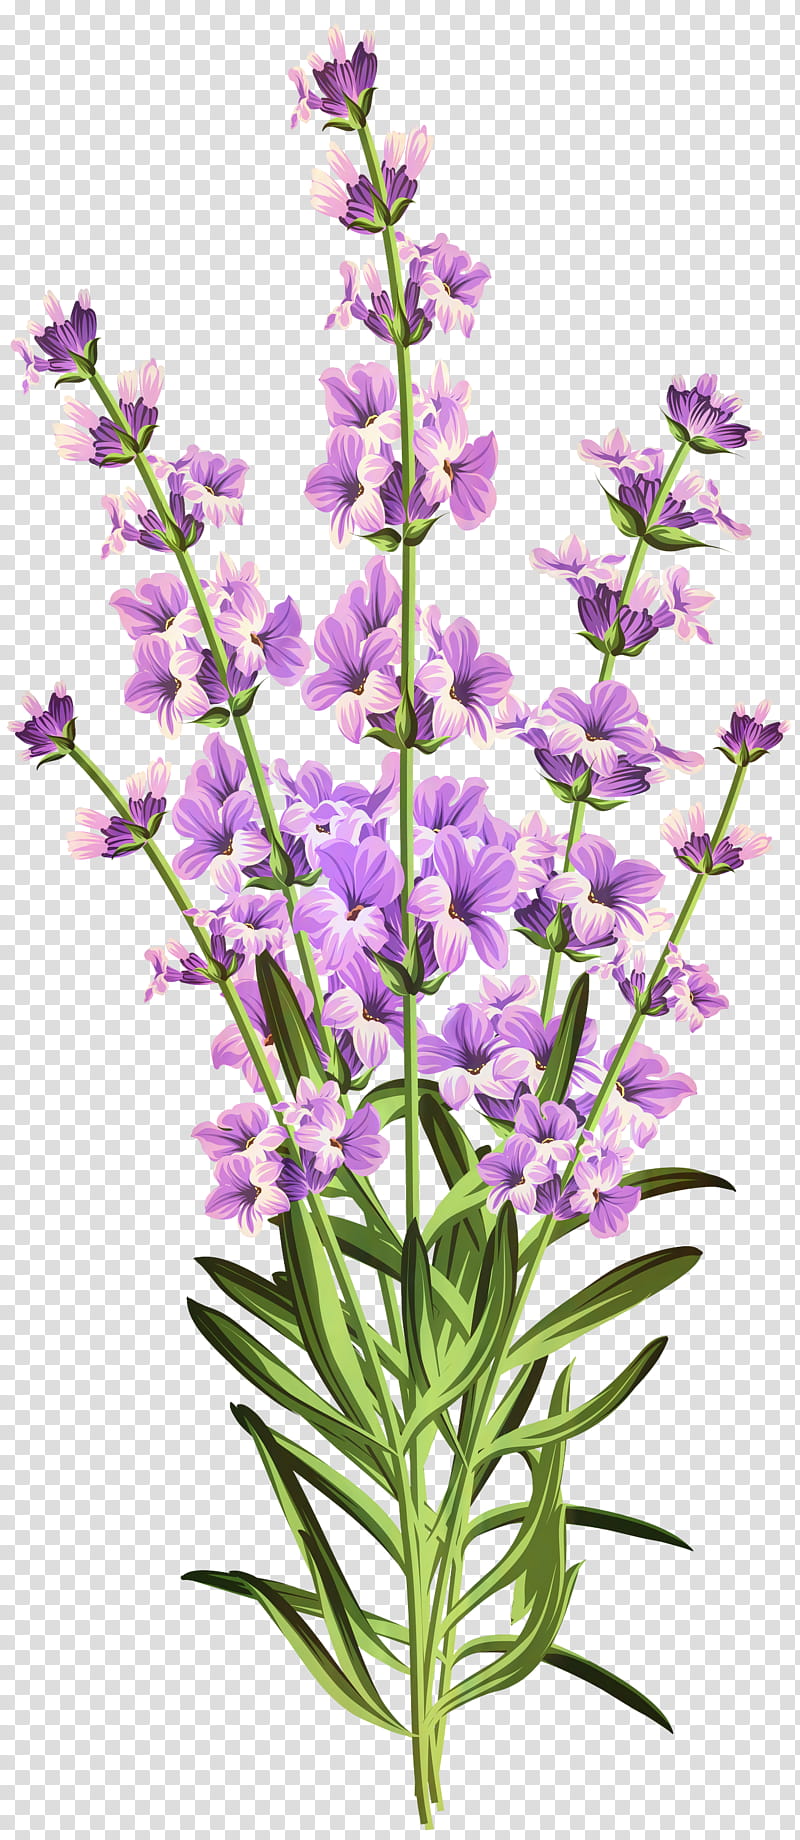 Flowers, Lavender, Web Design, Plant, Purple, English Lavender, Common Sage, Hyssopus transparent background PNG clipart